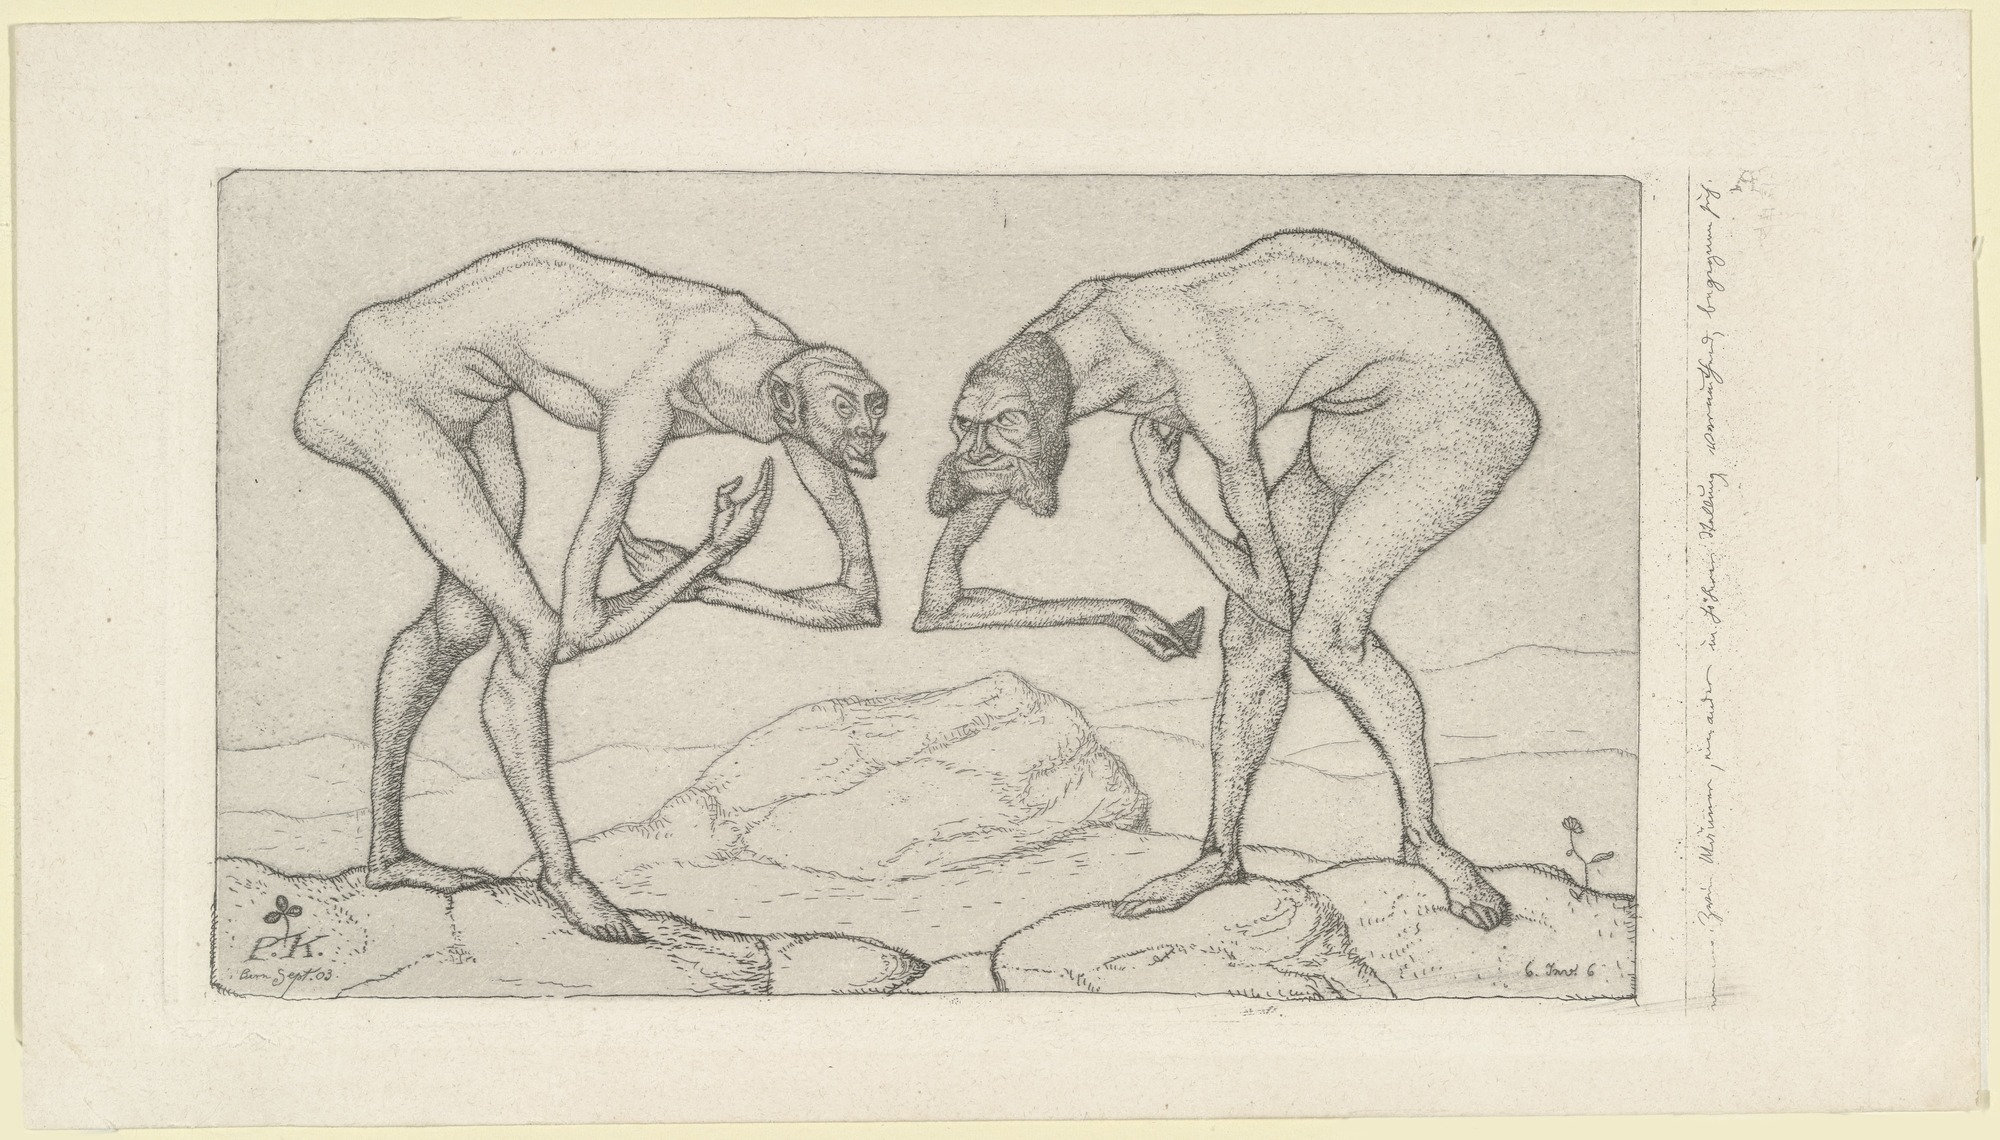 Dos hombres se encuentran y cada uno cree que el otro es de un rango superior by Paul Klee - 1903 - 11.7 x 22.4 cm Zentrum Paul Klee